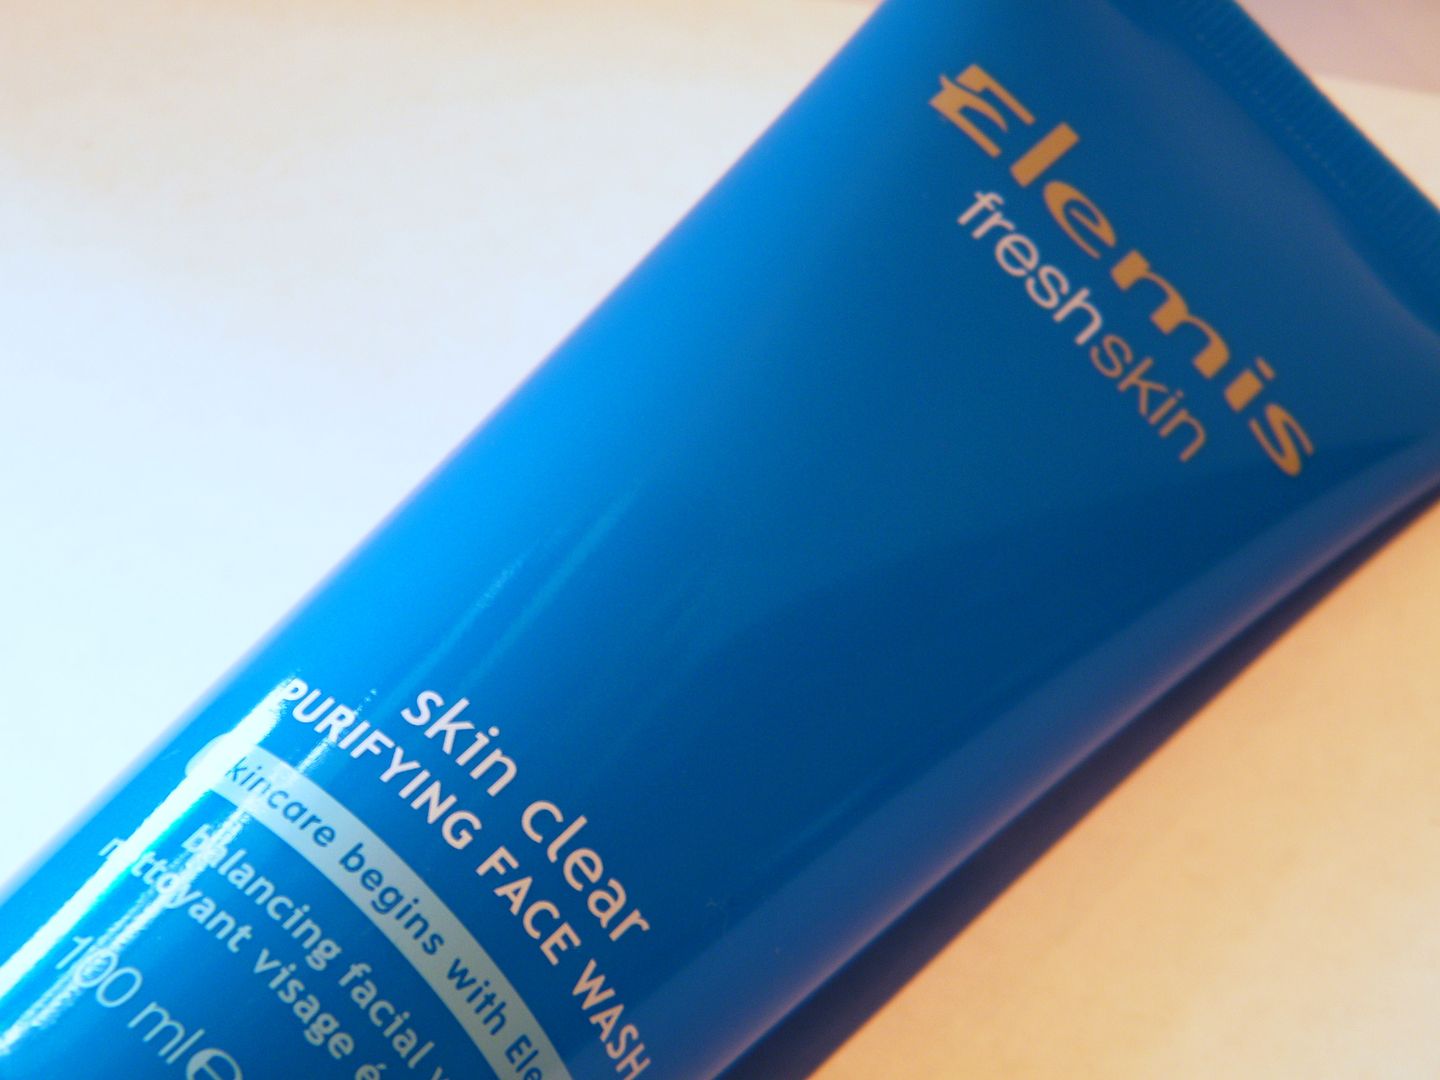 Elemis FreshSkin Purifying Face Wash